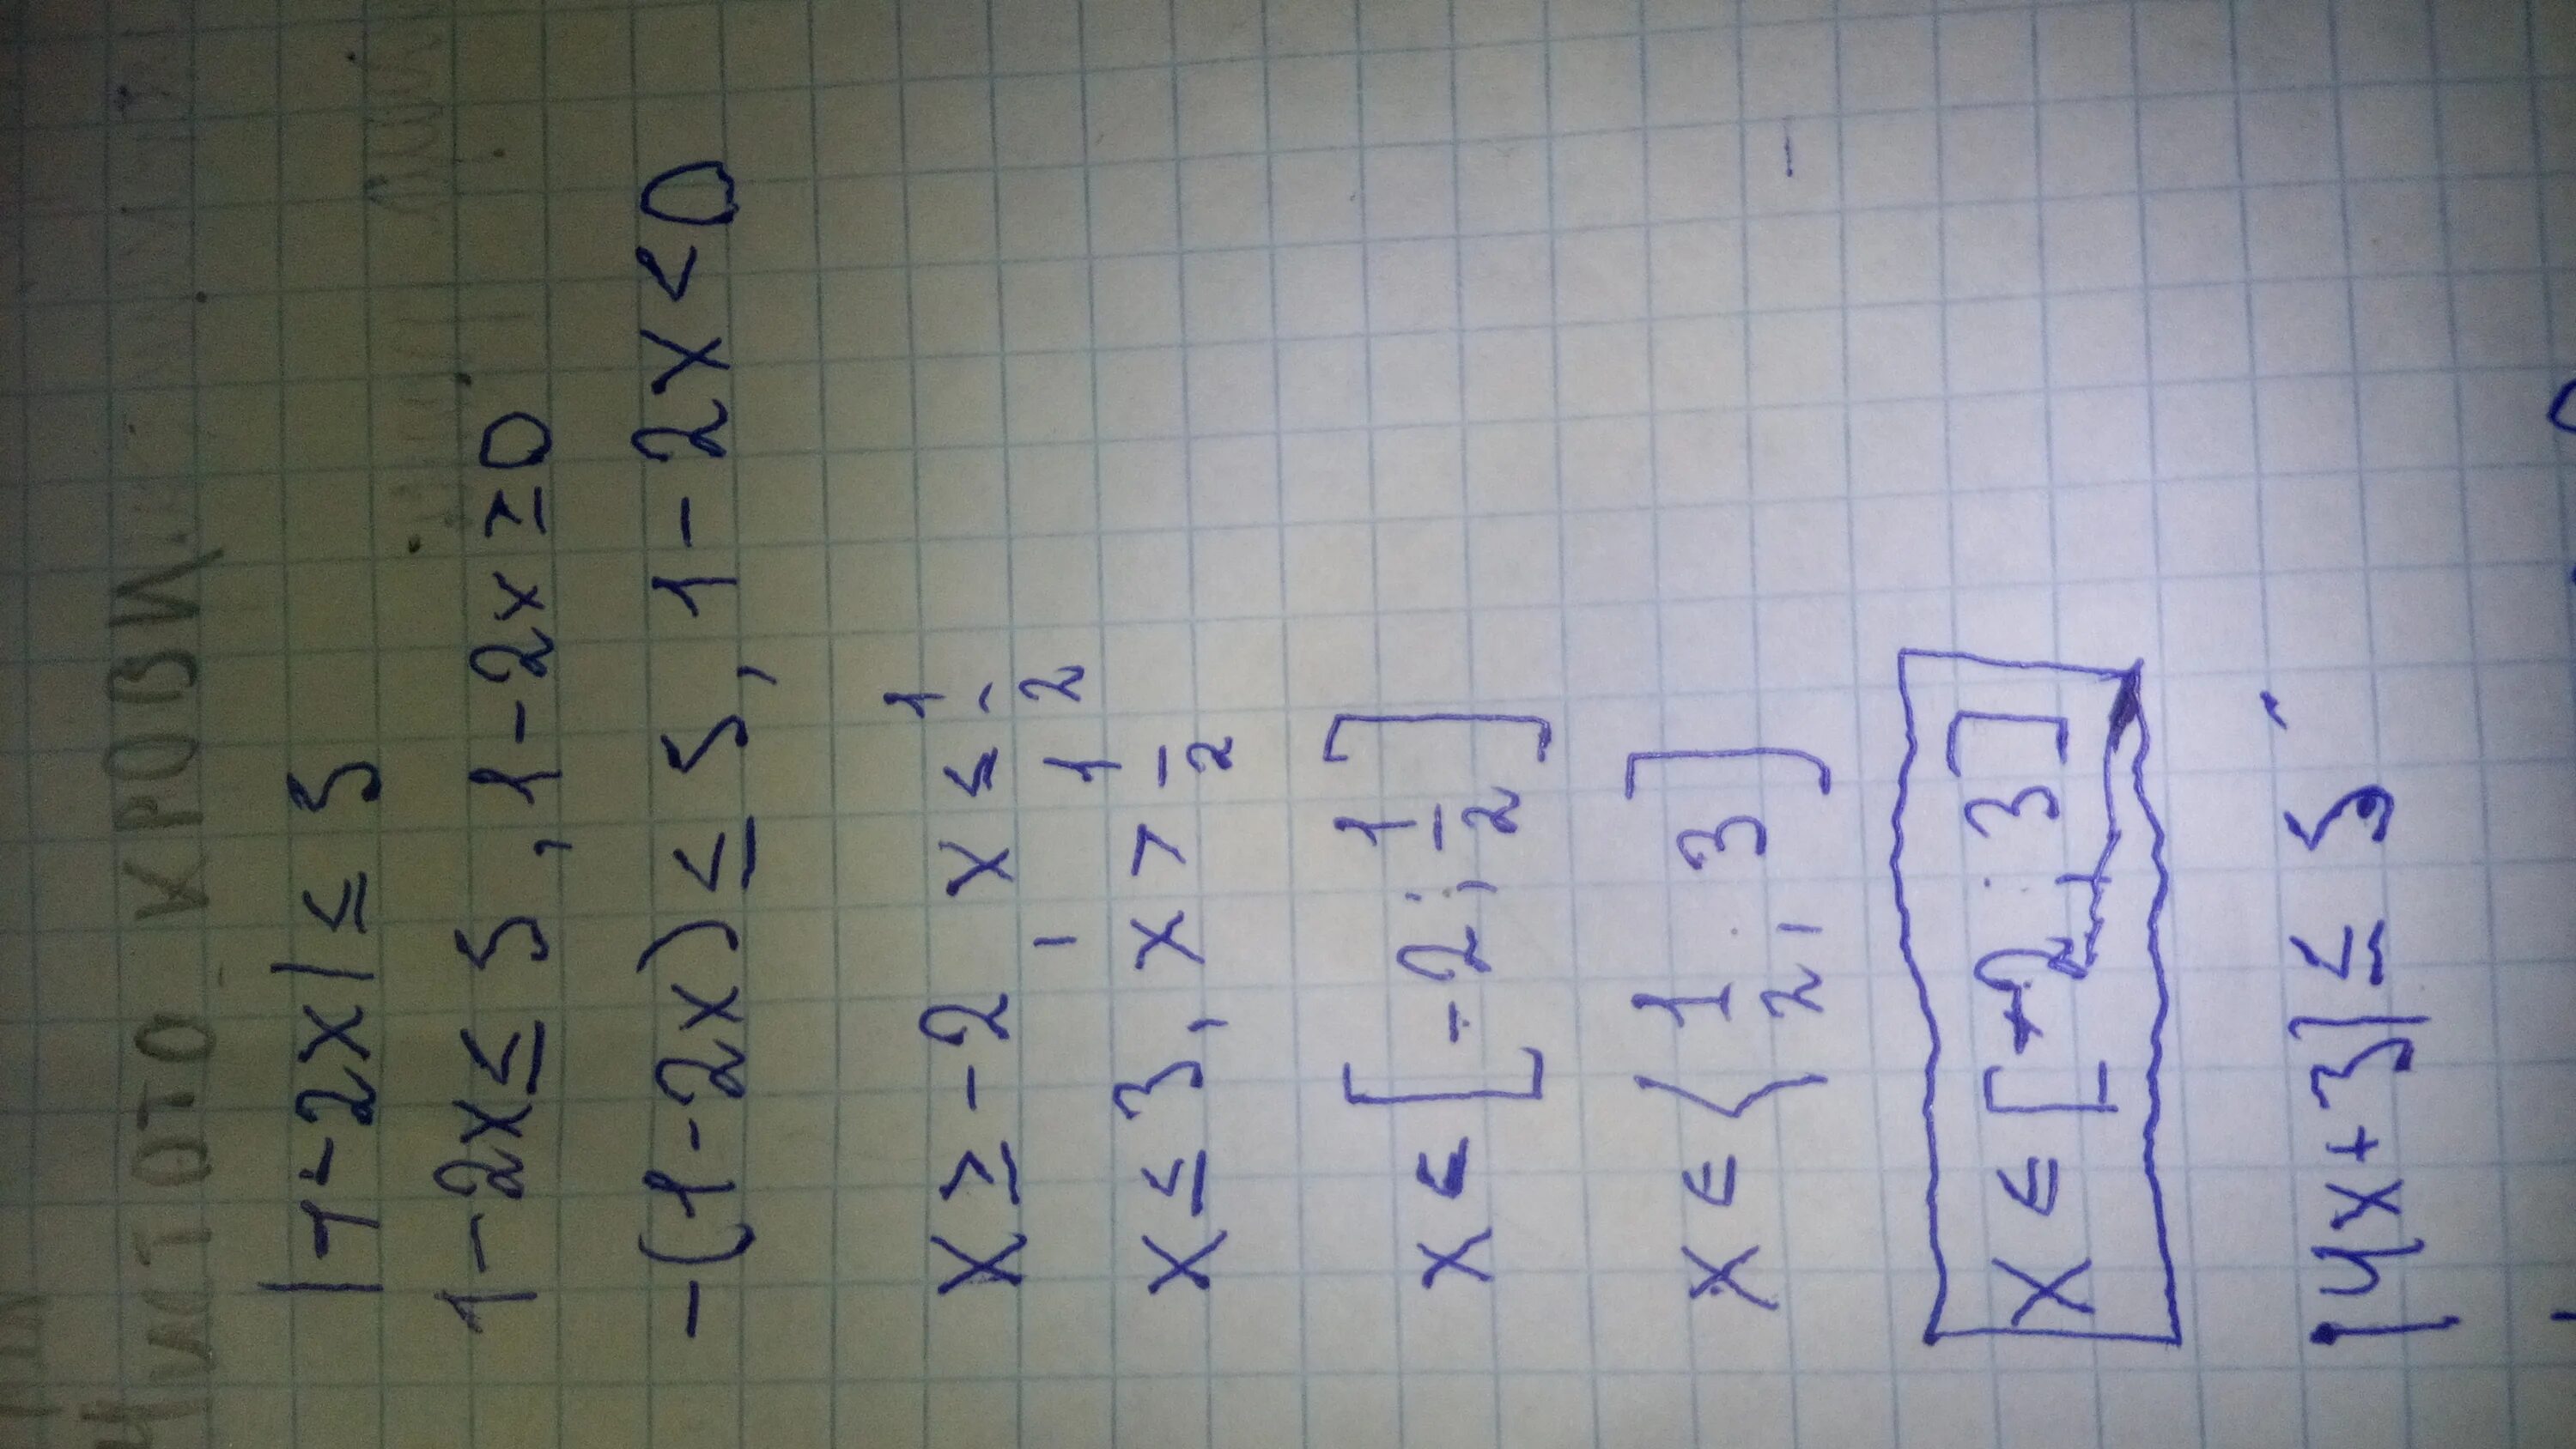 1 6 x больше или равно 0. 2х 5 х 3 больше или равно 0. Меньше или равно 5. -(Х-2)-3(Х-1) меньше 2х. 5х+4/3х-1 меньше 0.